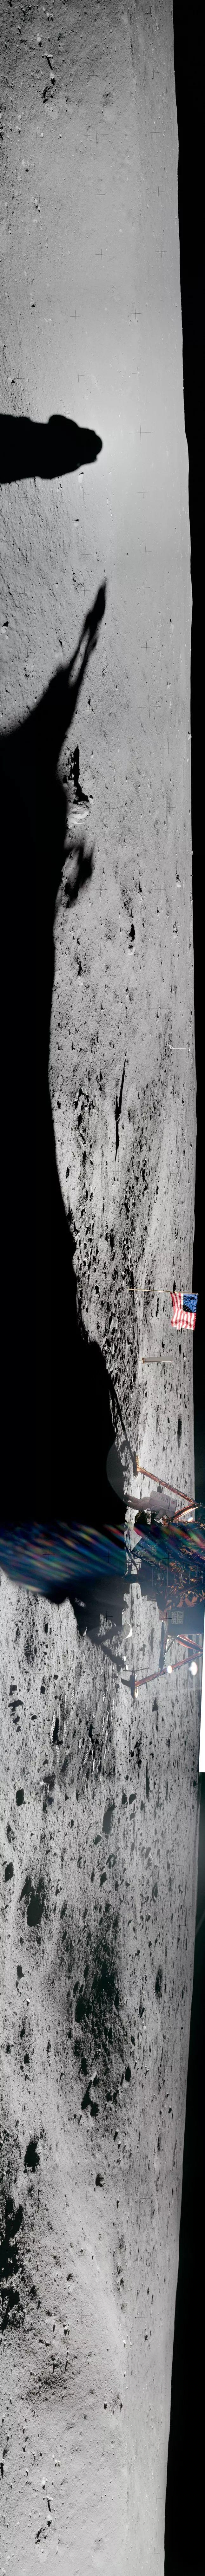 人类六次登月着陆点的全景照片